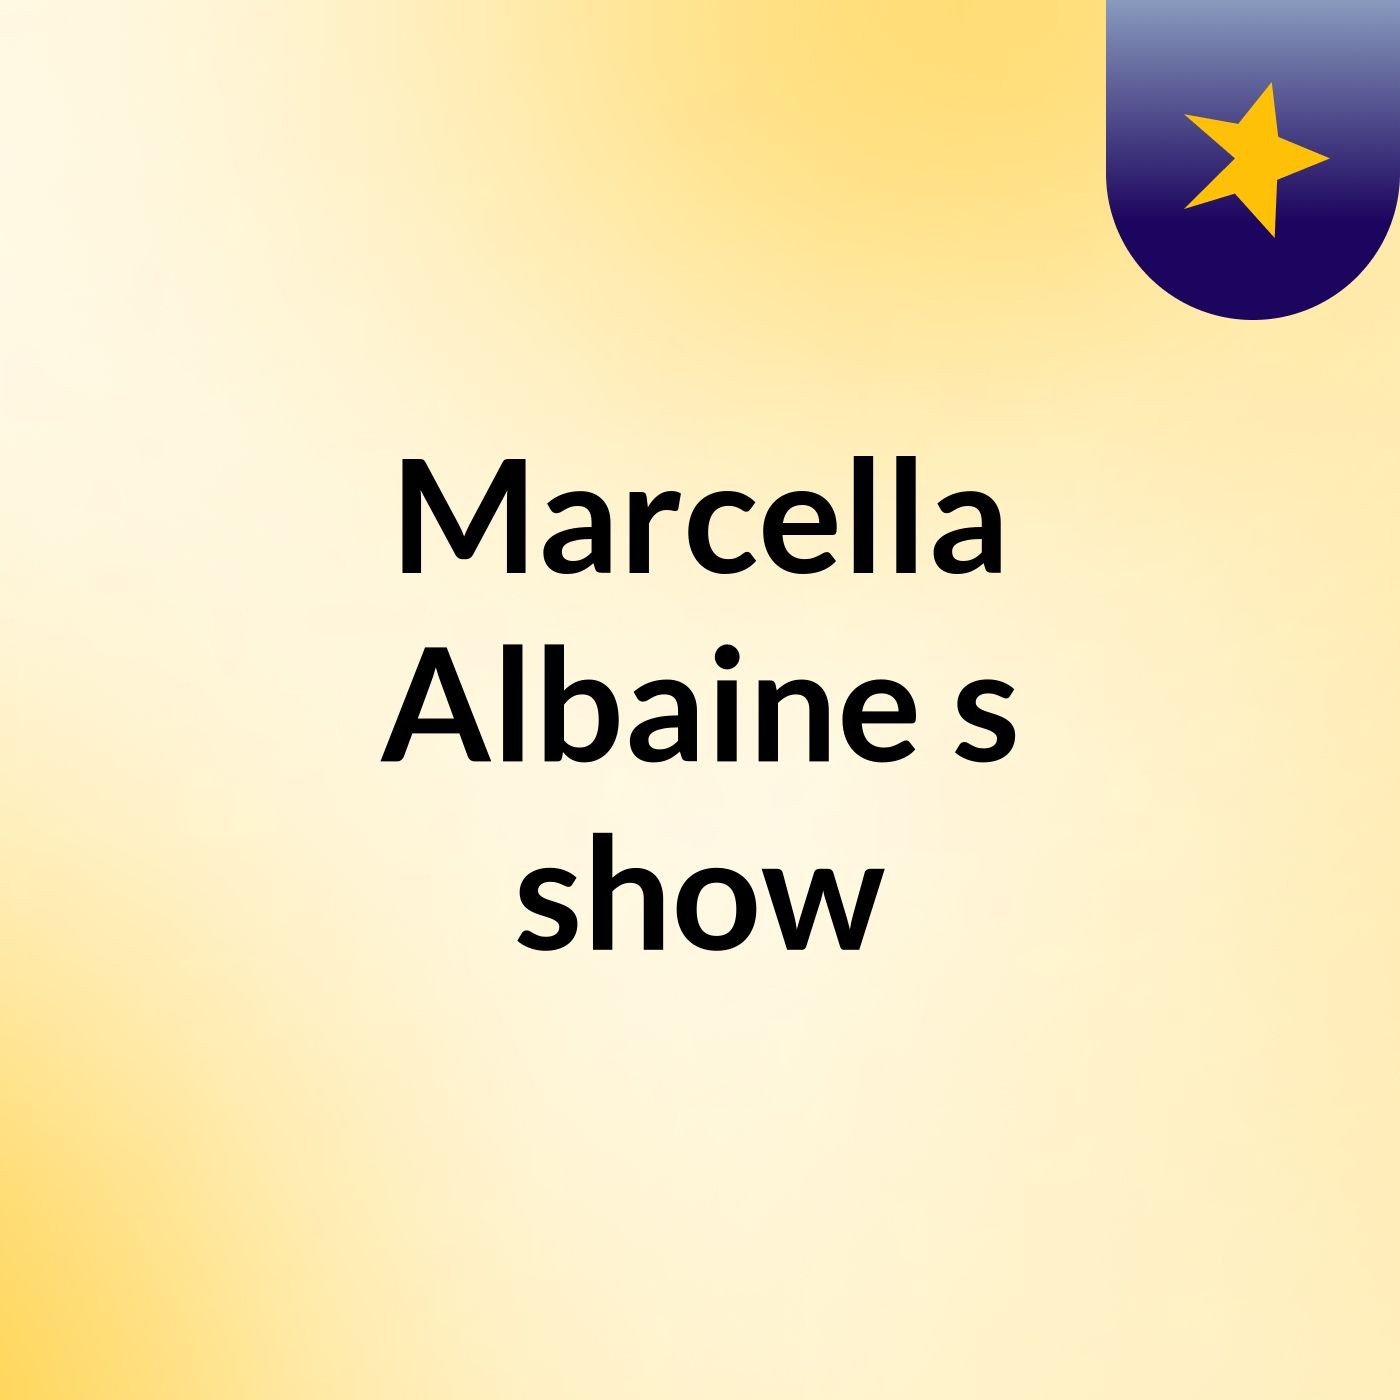 Marcella Albaine's show